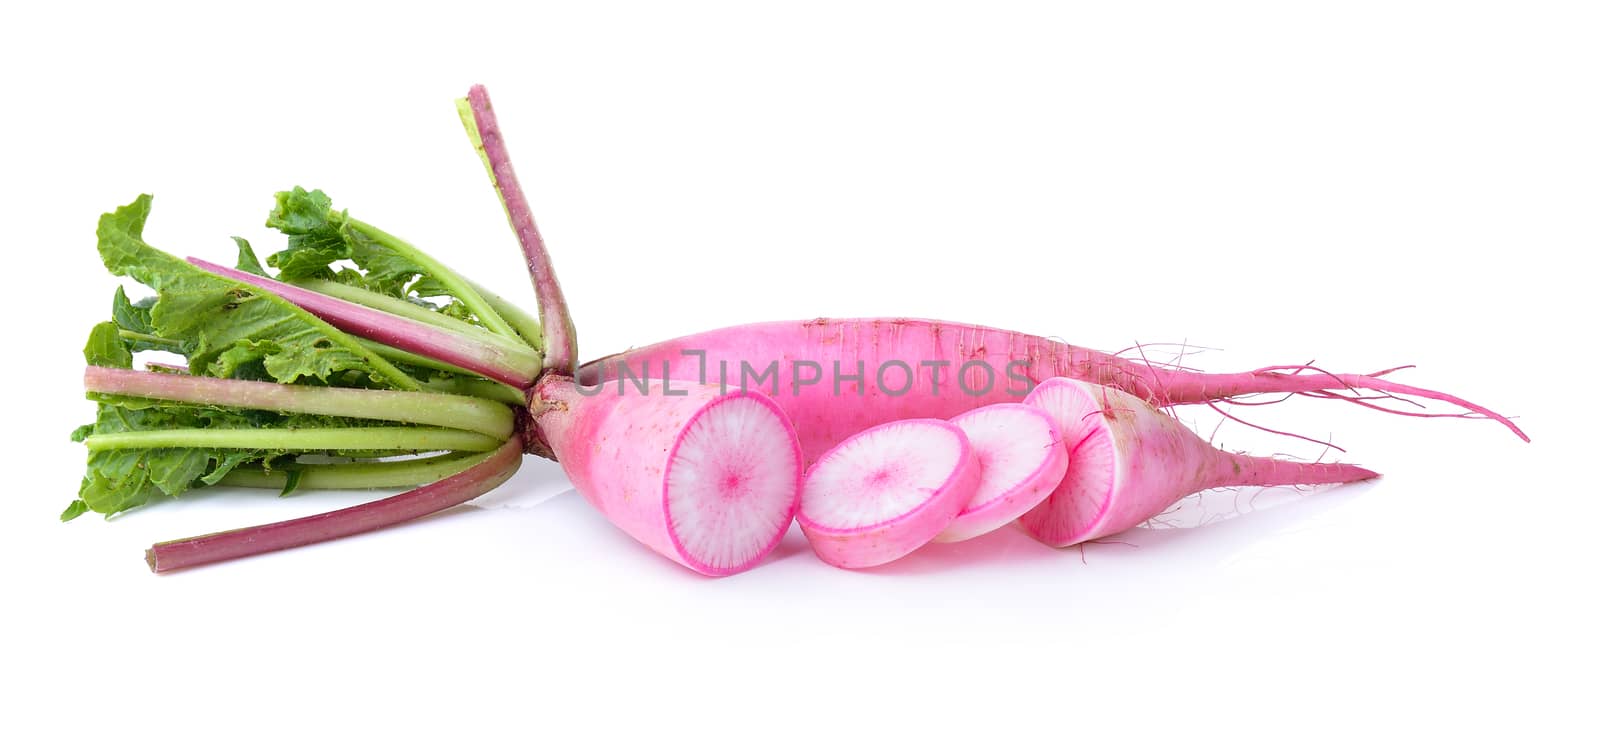  radishes isolated on white background